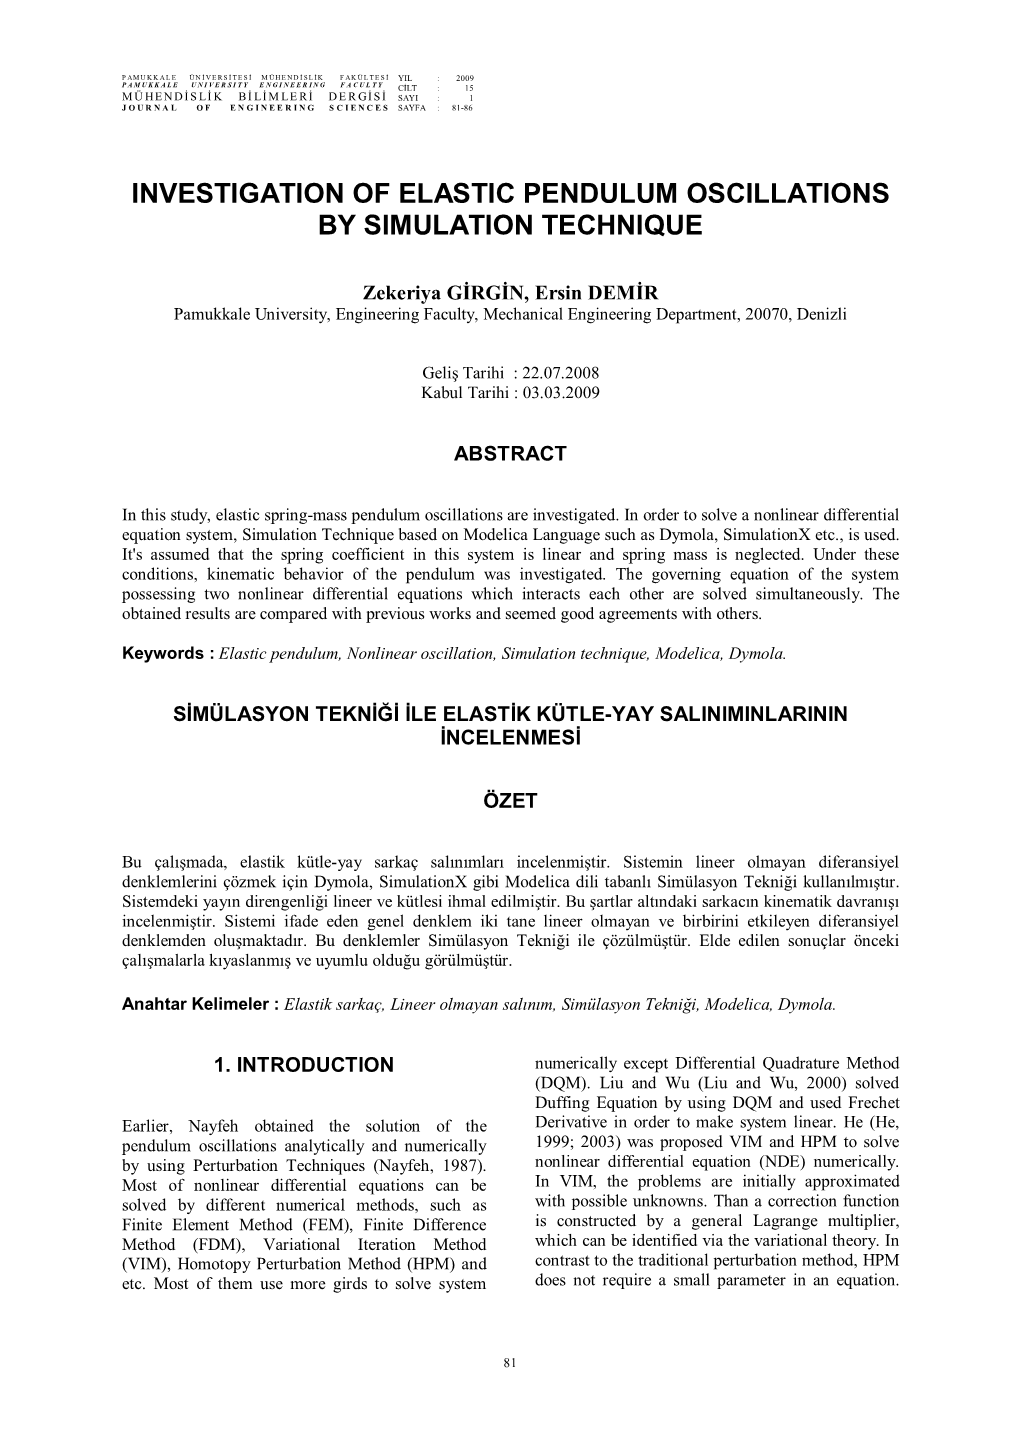 Investigation of Elastic Pendulum Oscillations by Simulation Technique